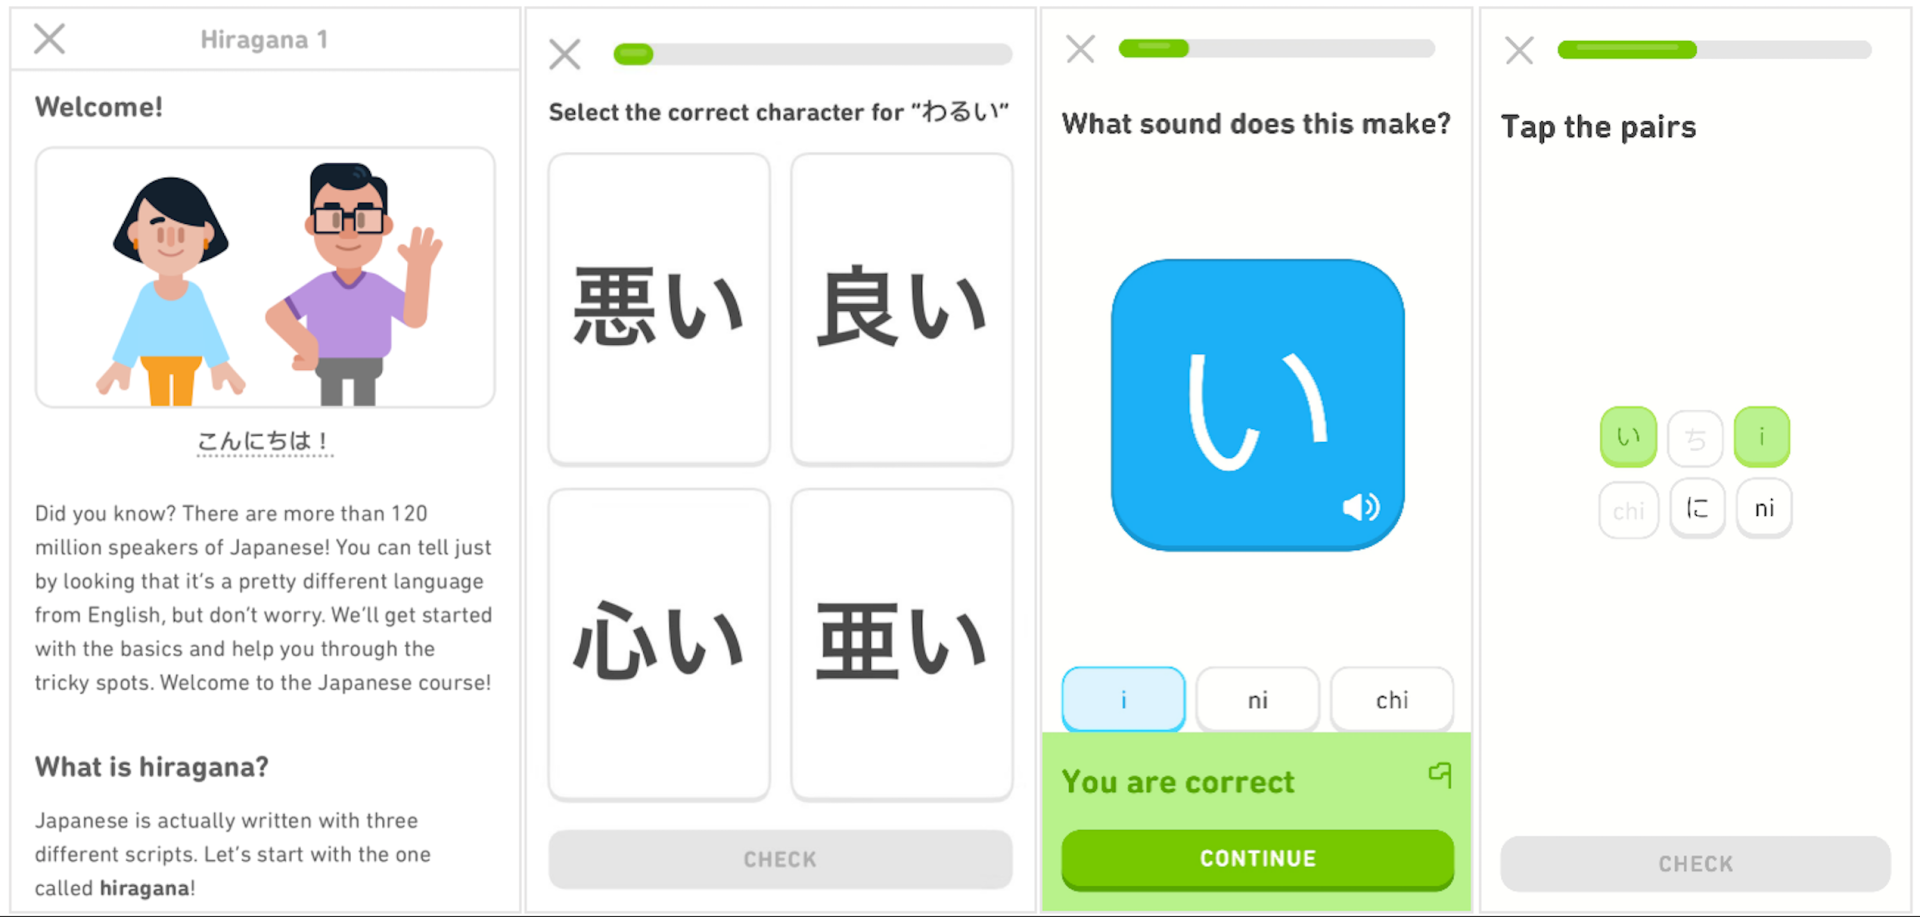 Ứng dụng học ngôn ngữ số 1 thế giới Duolingo